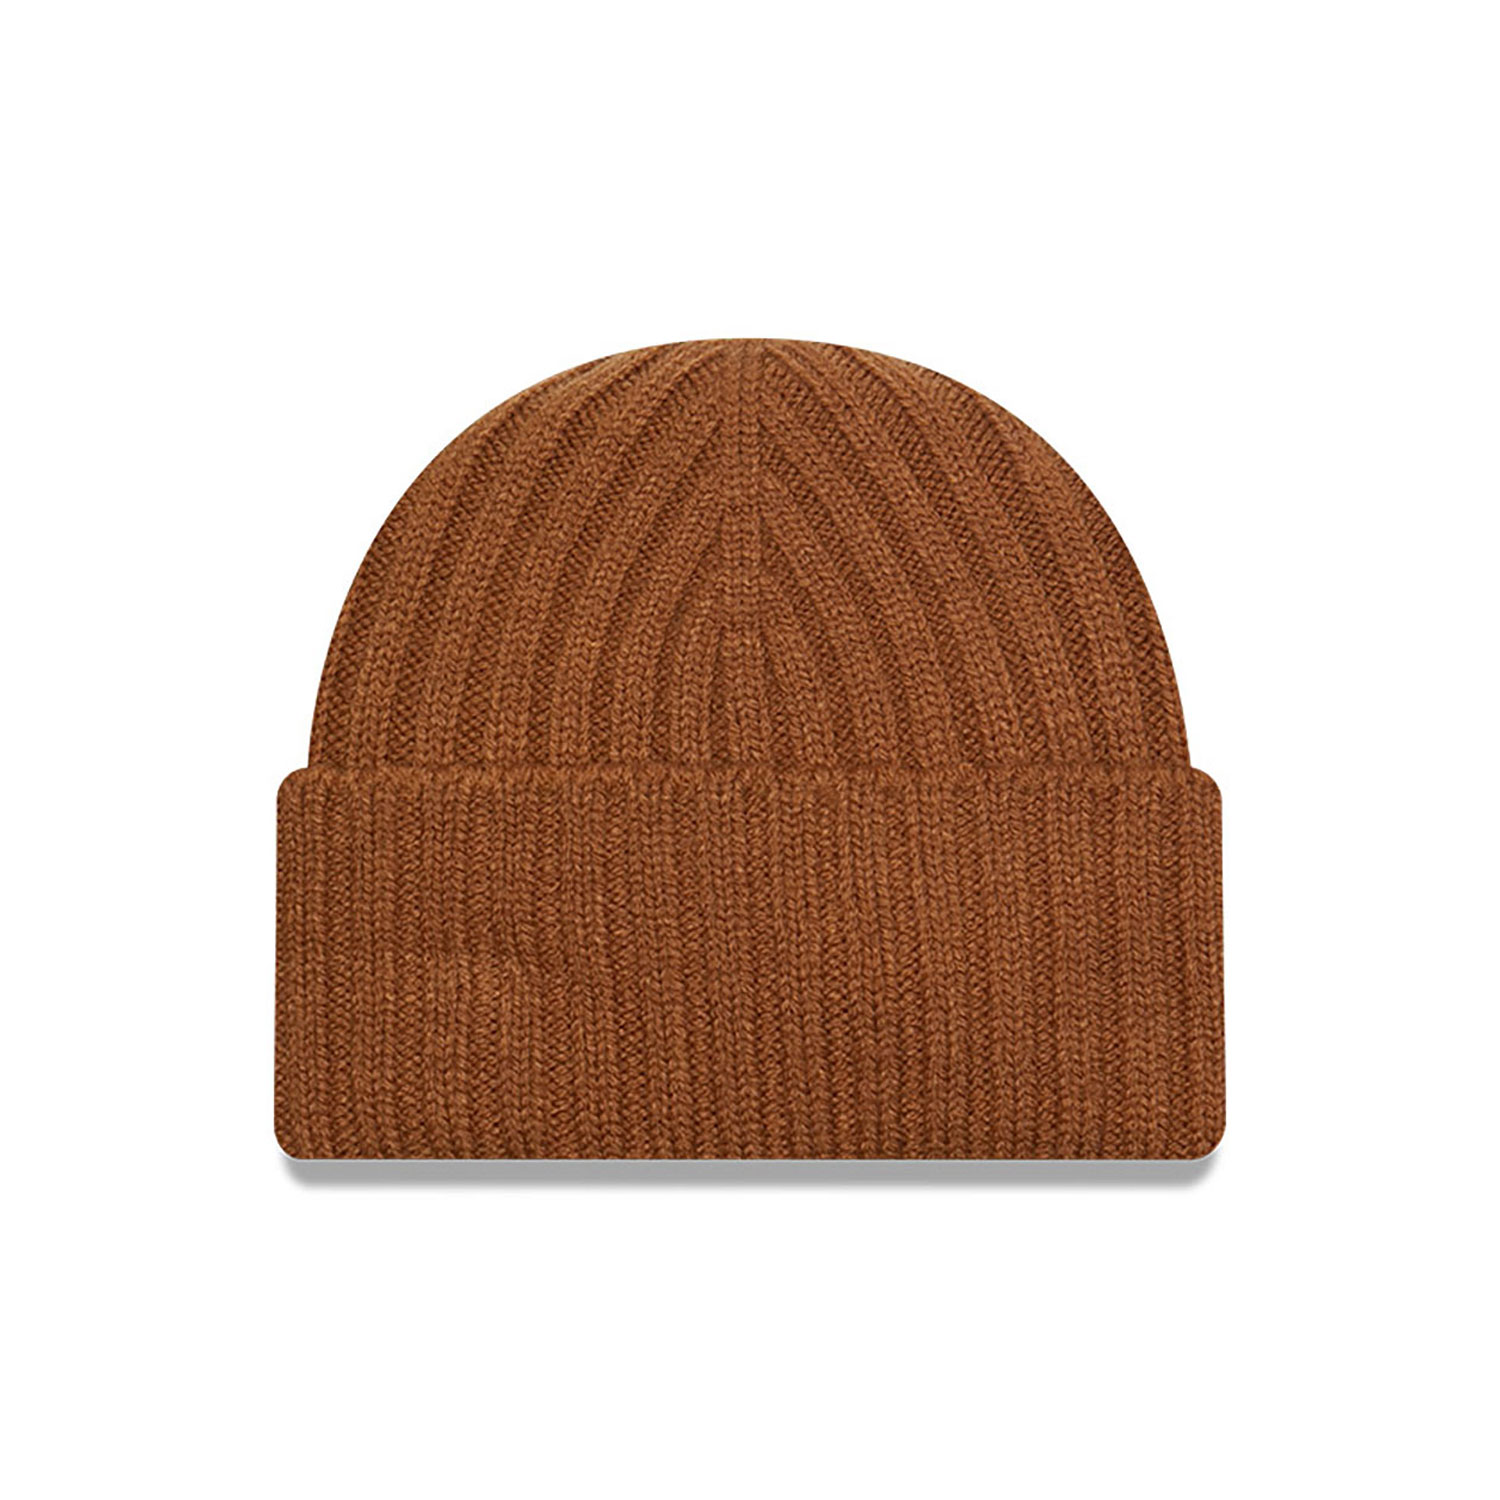 New Era Short Rib Brown Cuff Knit Beanie Hat